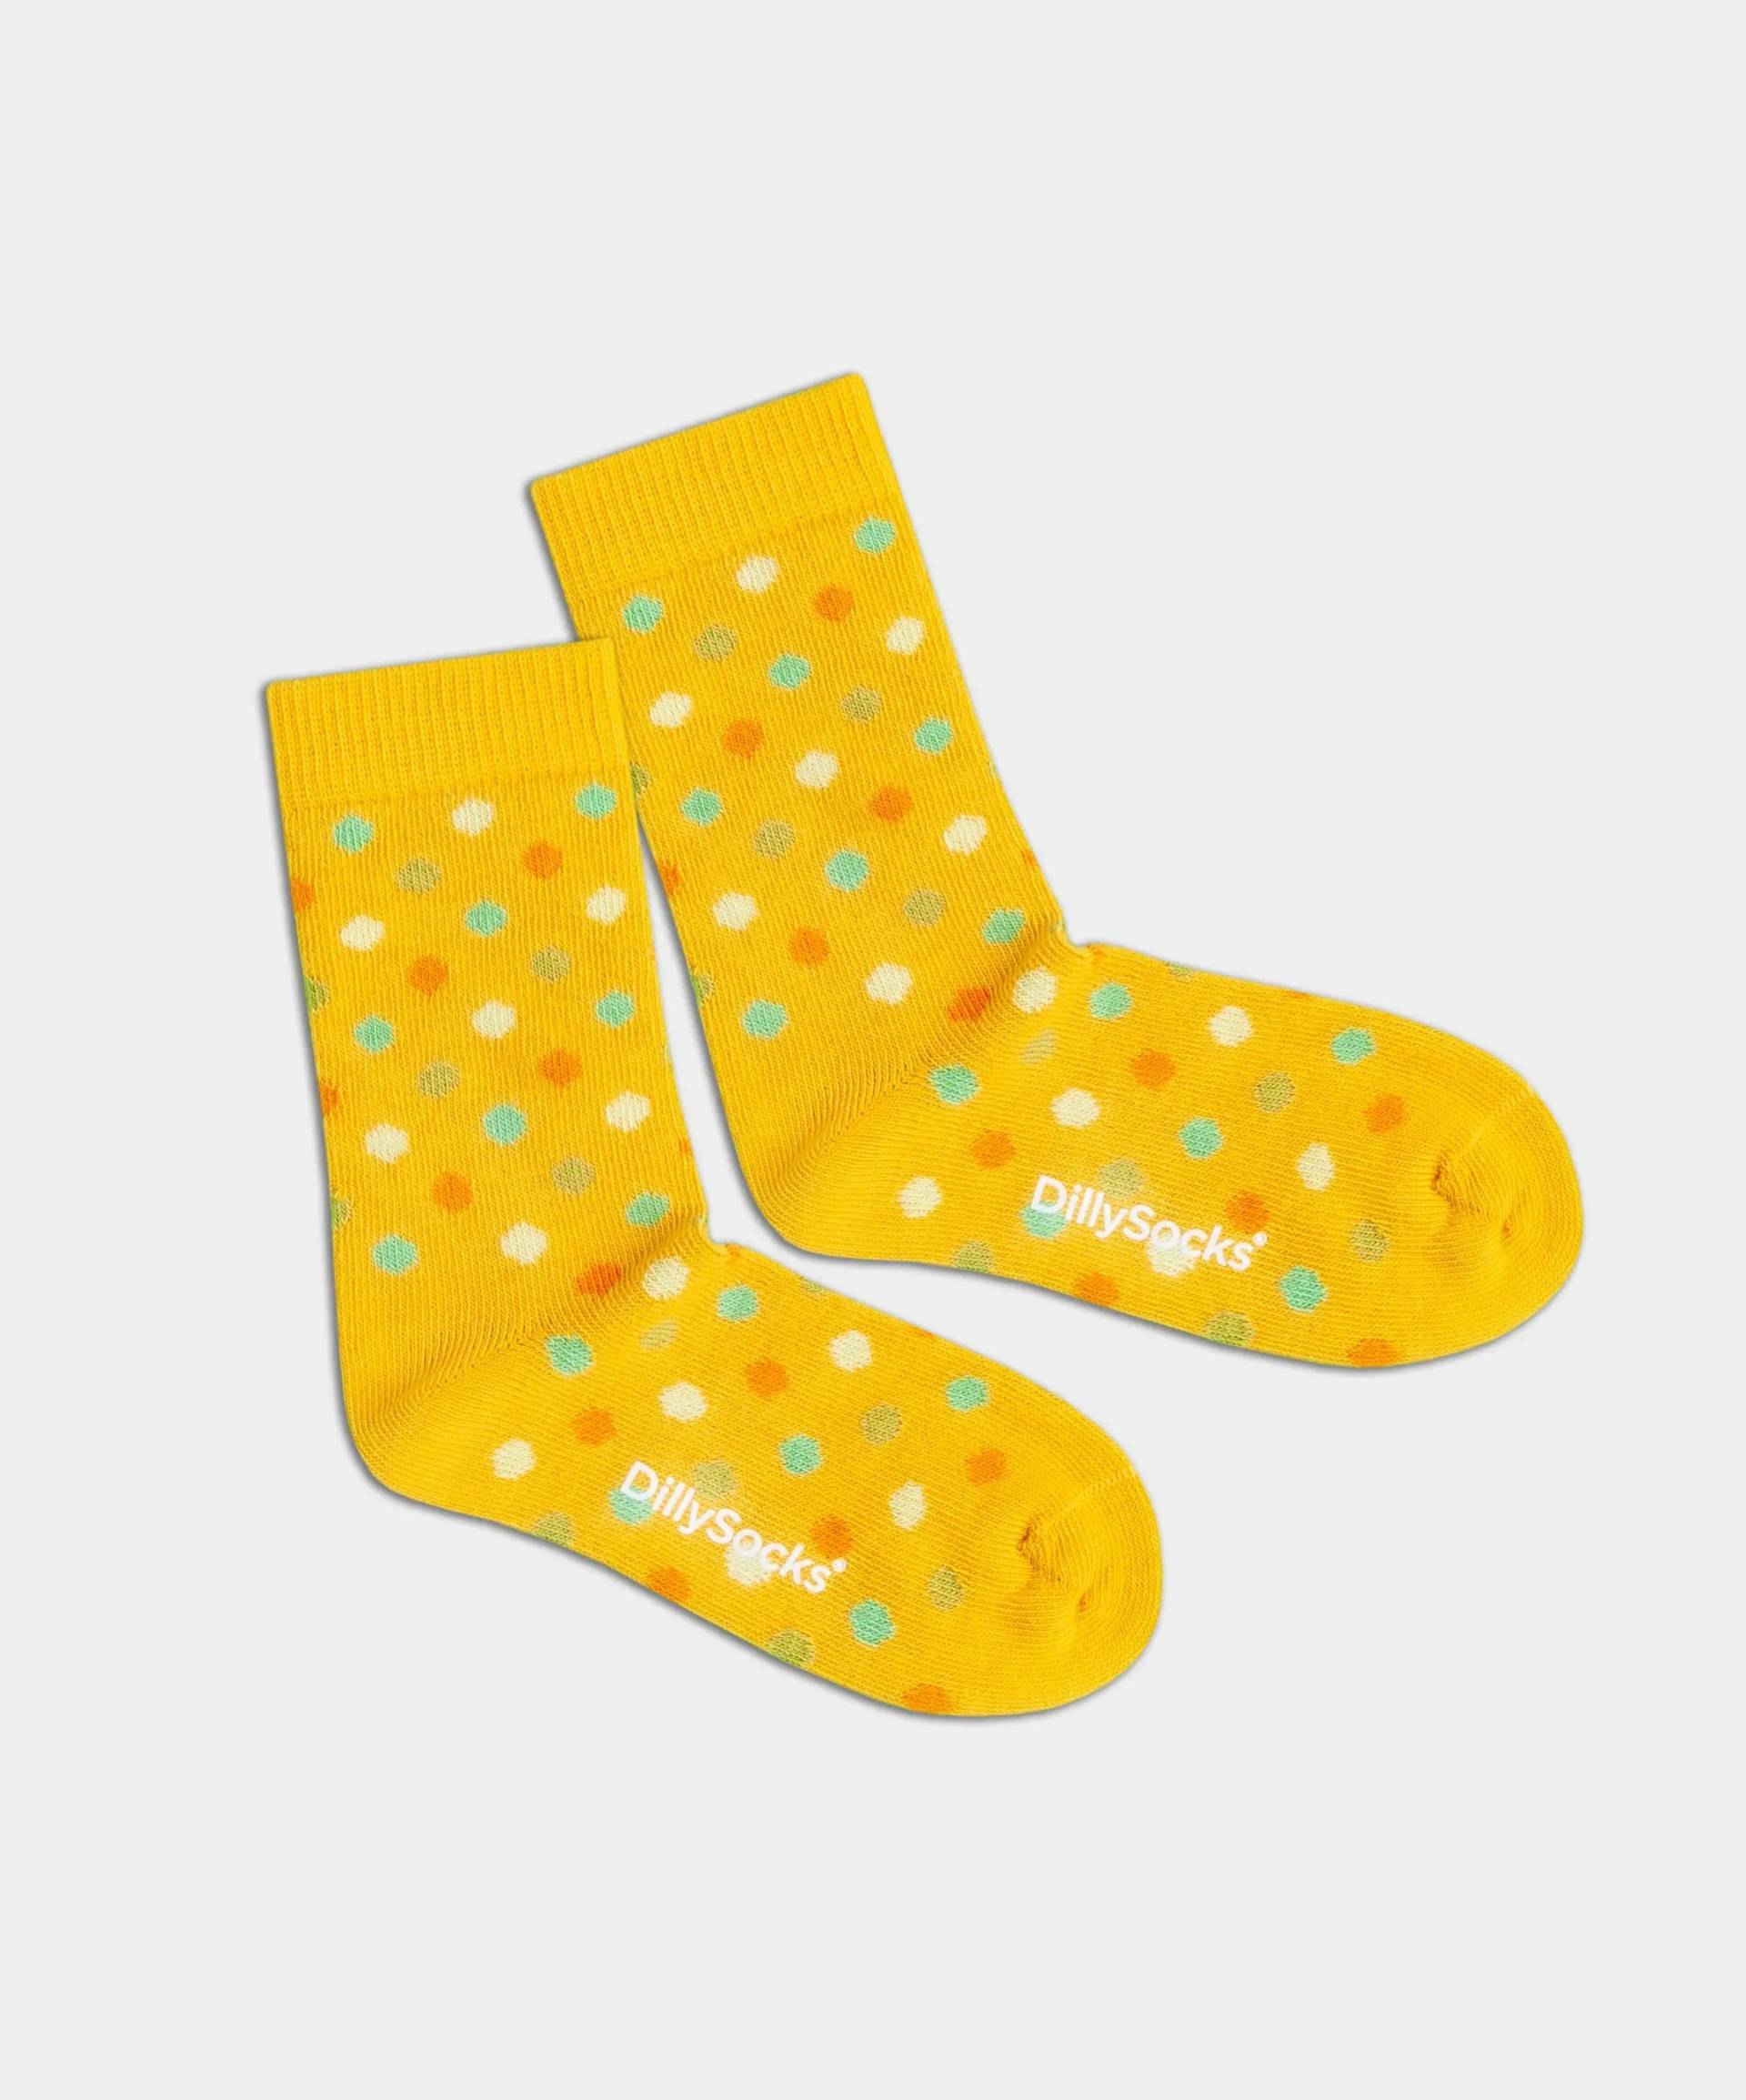 - Kindersocken in Gelb mit Konfetti Punkte Motiv/Muster von DillySocks